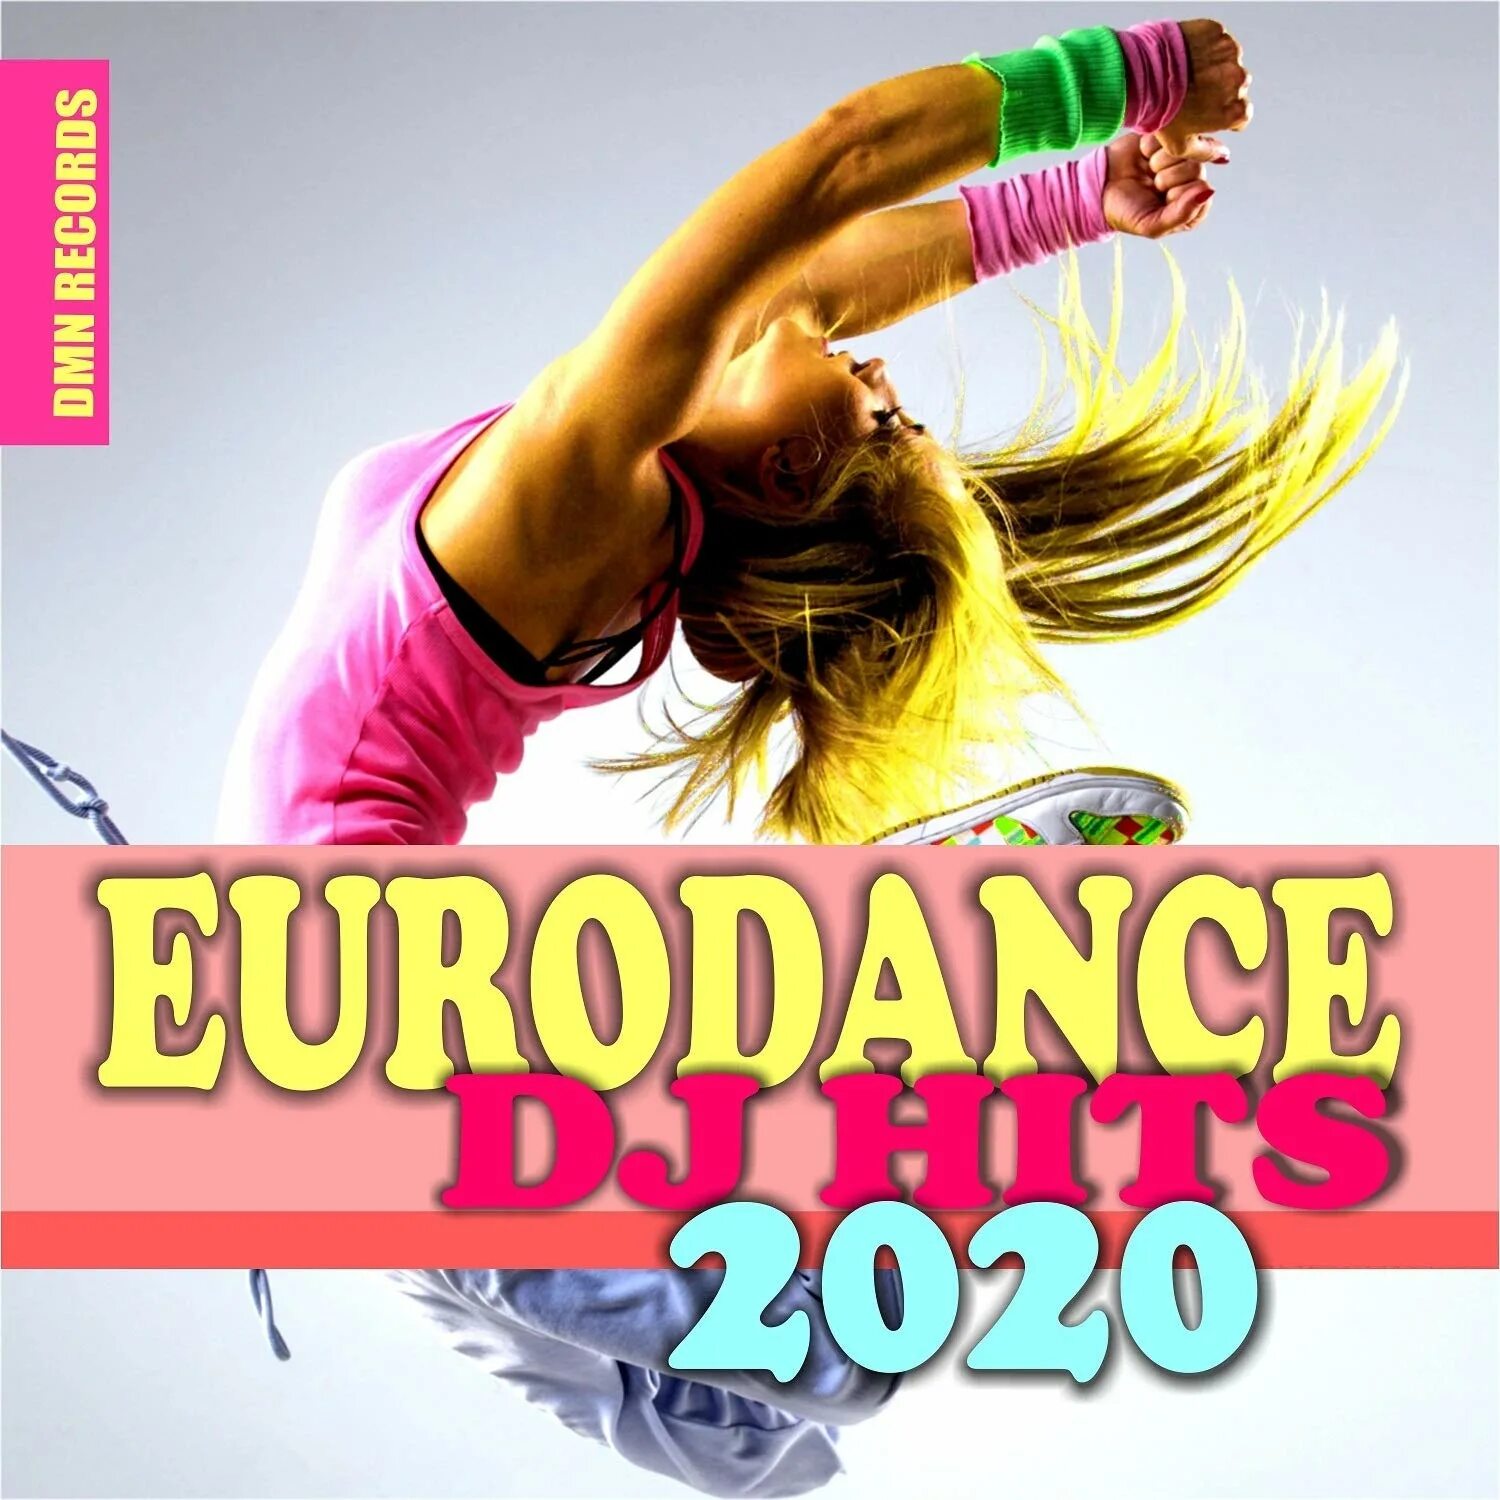 Новинки евродэнс свежие. Eurodance DJ Hits 2020. Евродэнс сборник. Евроденсер 2020. Евродэнс  новое.